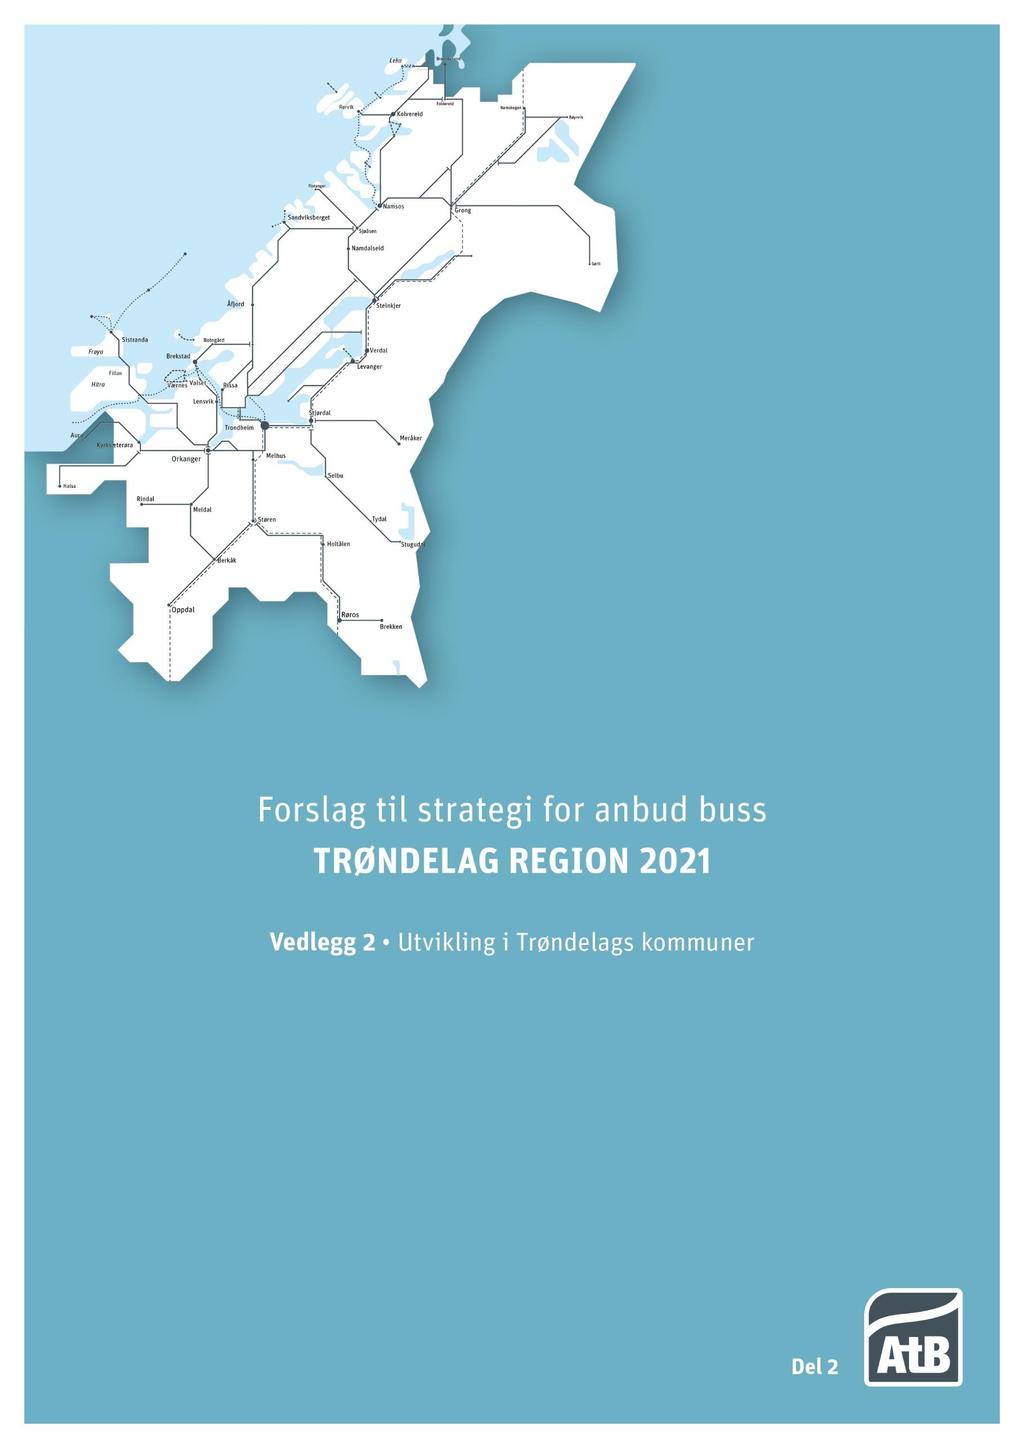 Vedlegg 2: Forslag til strategi for Anbud buss Trøndelag region 2021 (Regionanbud 2021) Vedlegg 2 Utvikling i Trøndelags